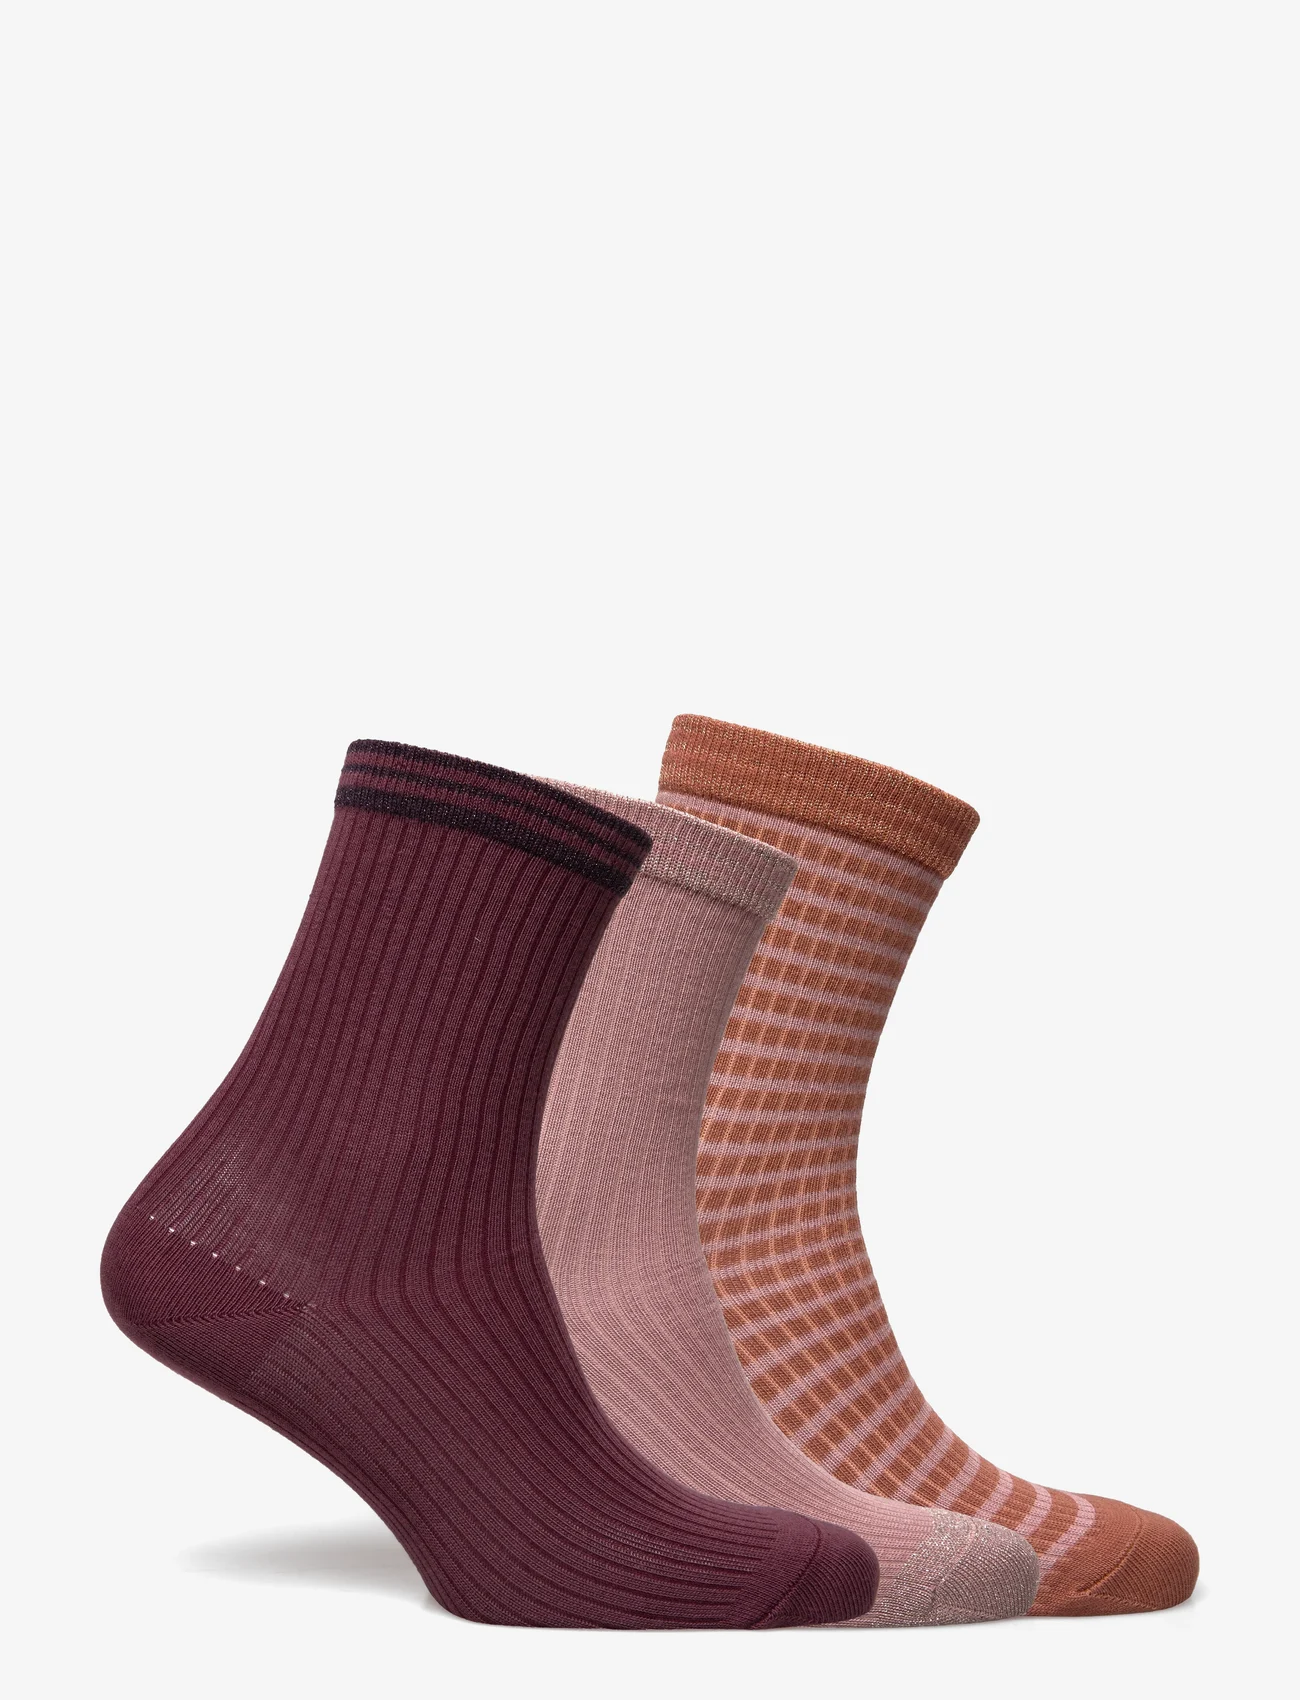 mp Denmark - Karen socks - 3-pack - lowest prices - woodrose multi mix - 1